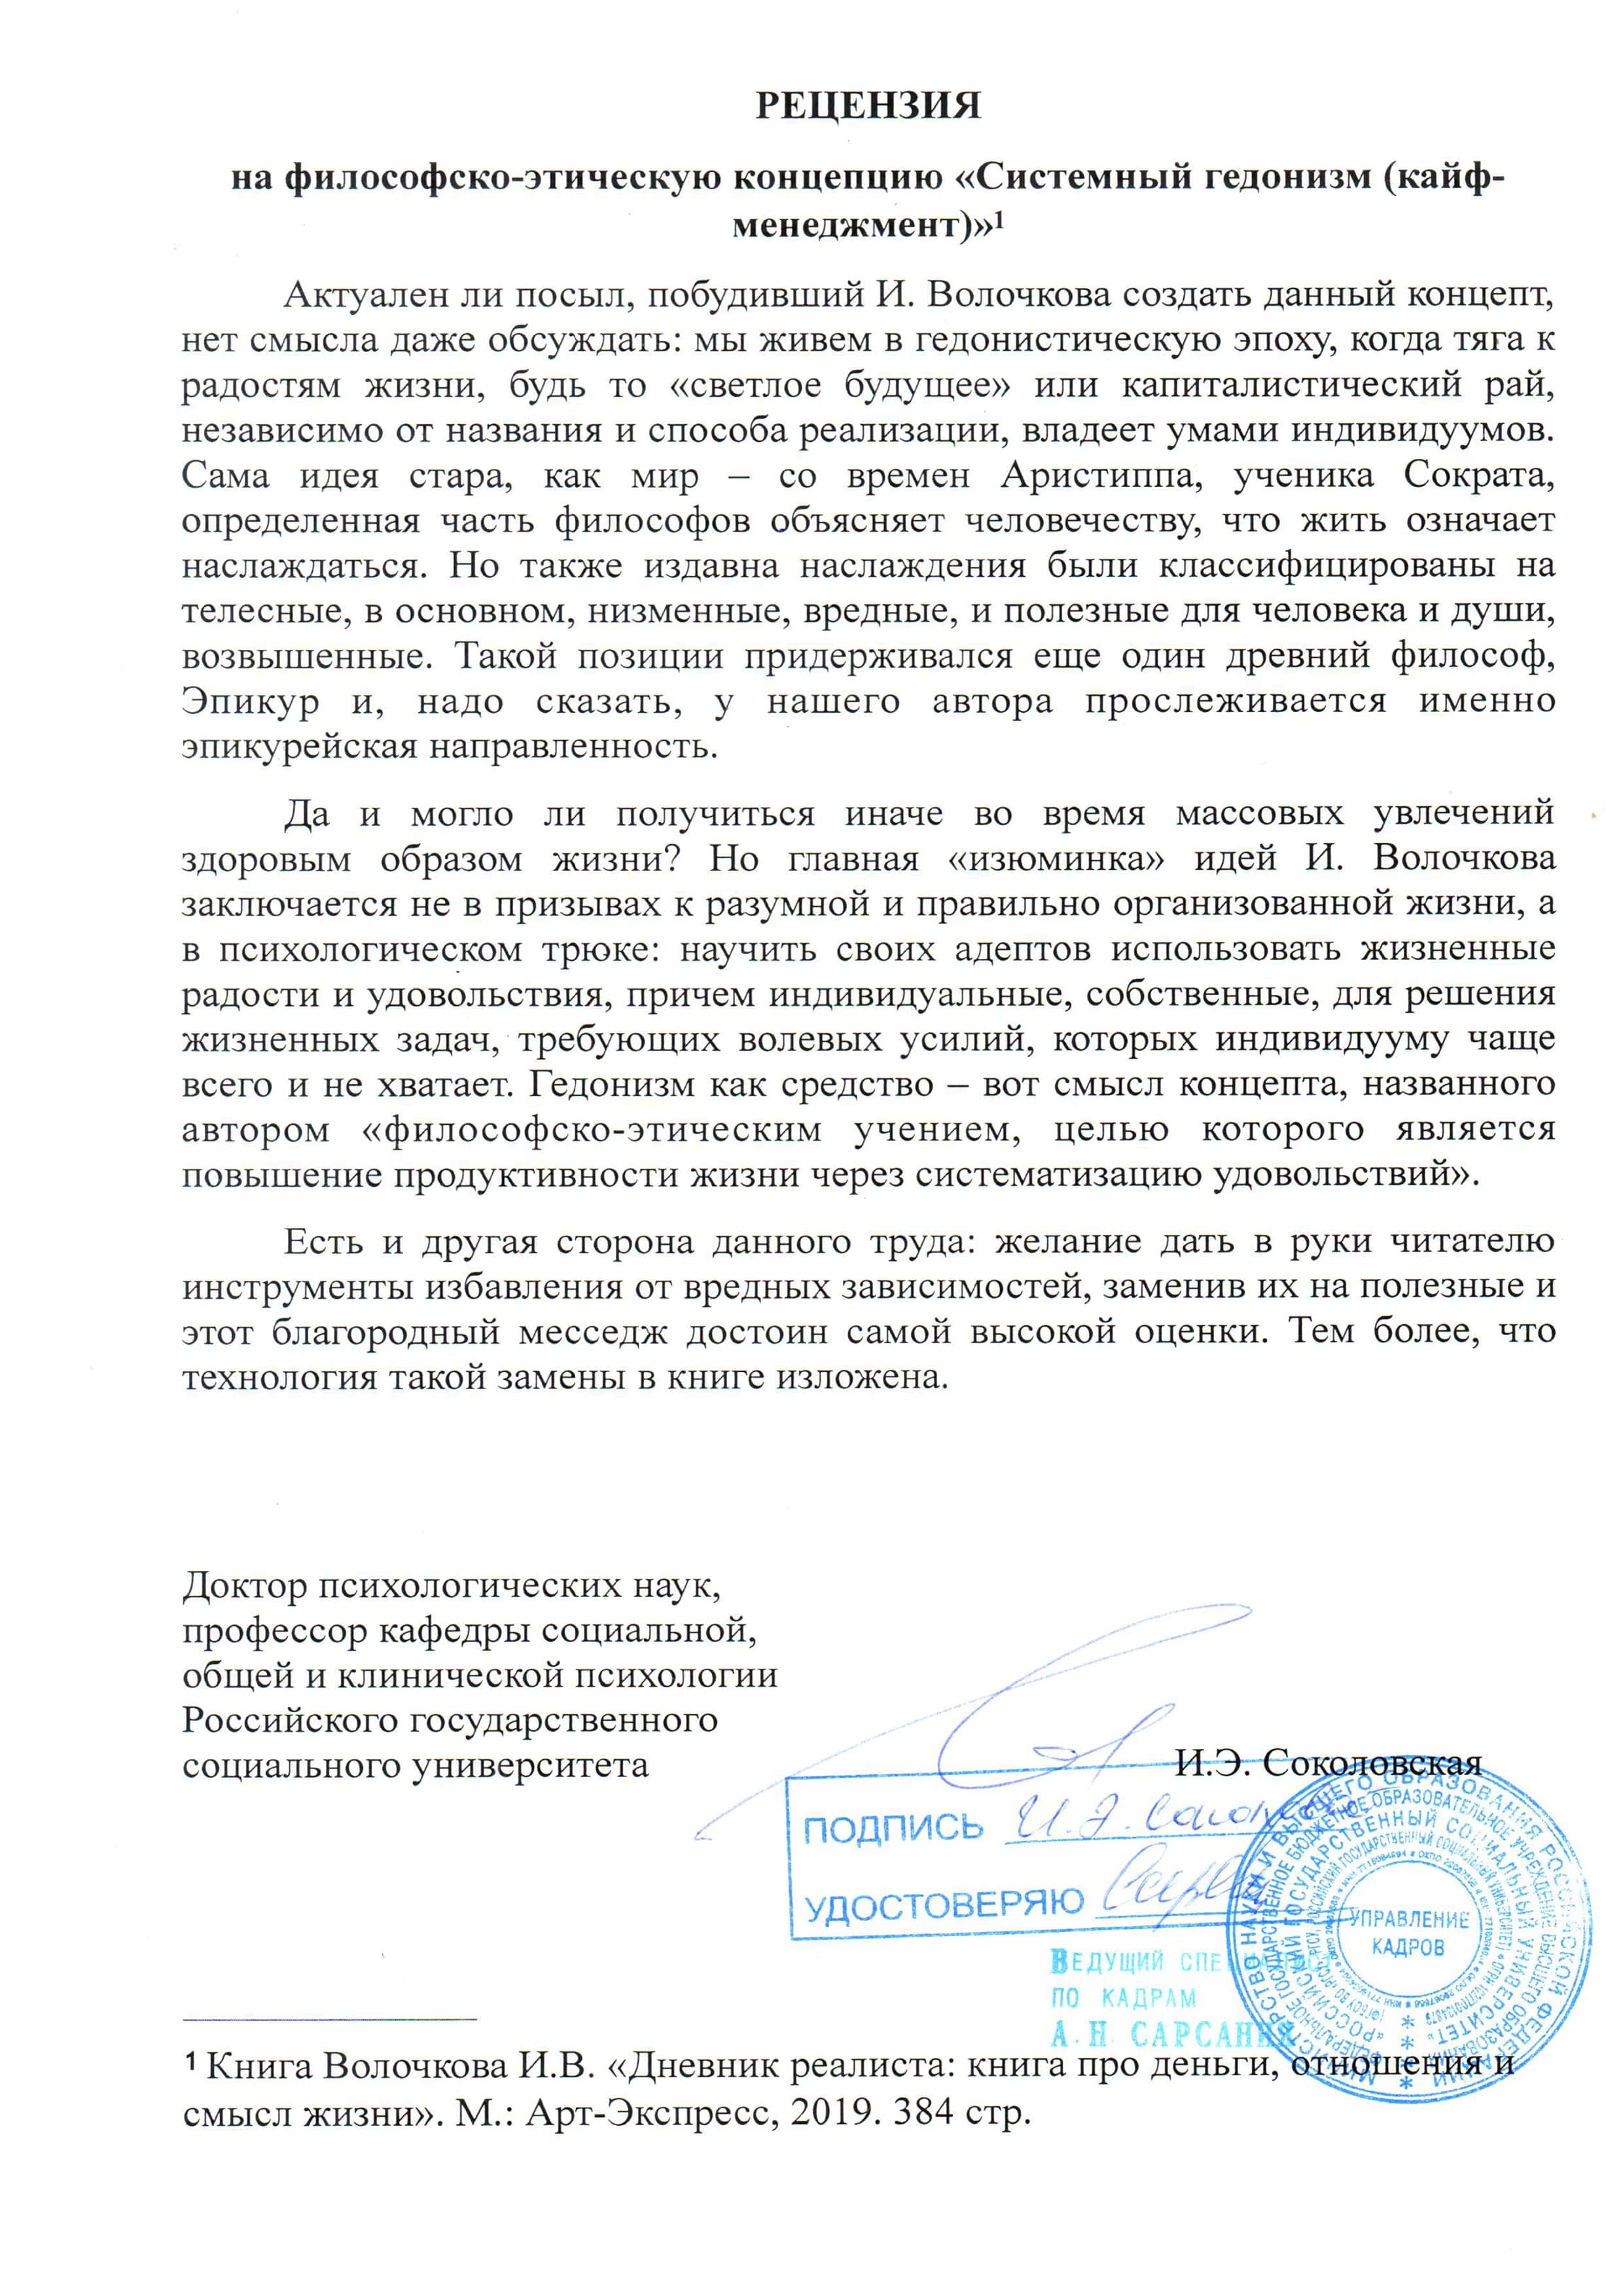 Российский государственный социальный университет (РГСУ) провел исследование системного гедонизма (траблхакинг)